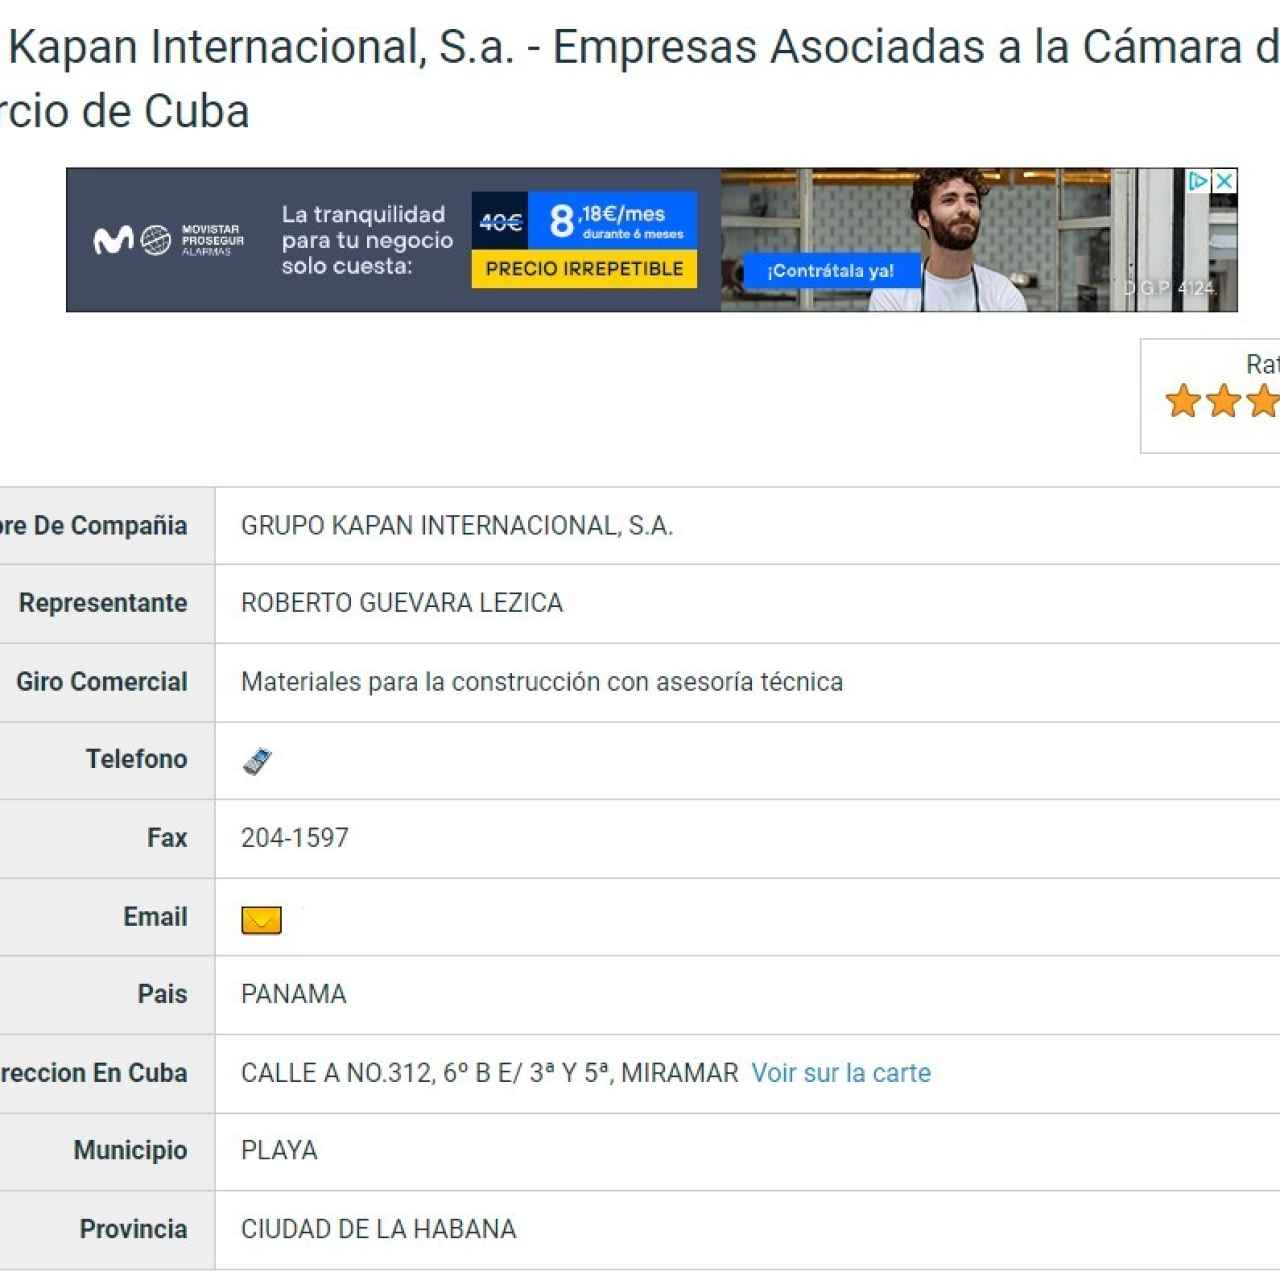 Ernesto Guevara Lezica también aparece como representante del Grupo Kapan Internacional en el registro de la Cámara de Comercio de Cuba.